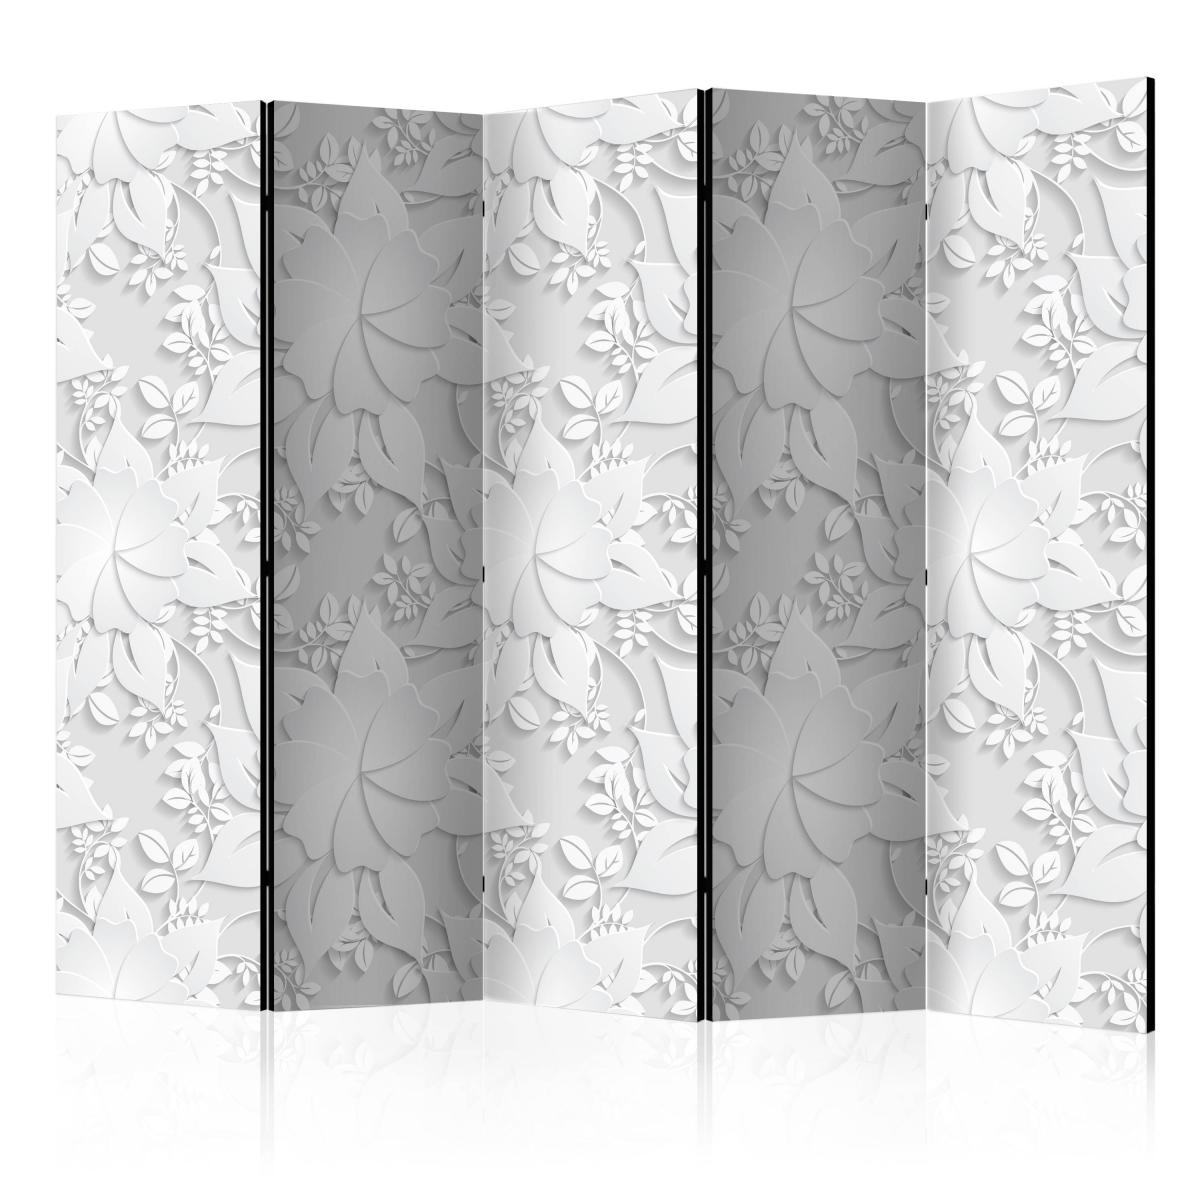 Bimago - Paravent 5 volets - Room divider – Flowers - Décoration, image, art | 225x172 cm | XL - Grand Format | - Cloisons